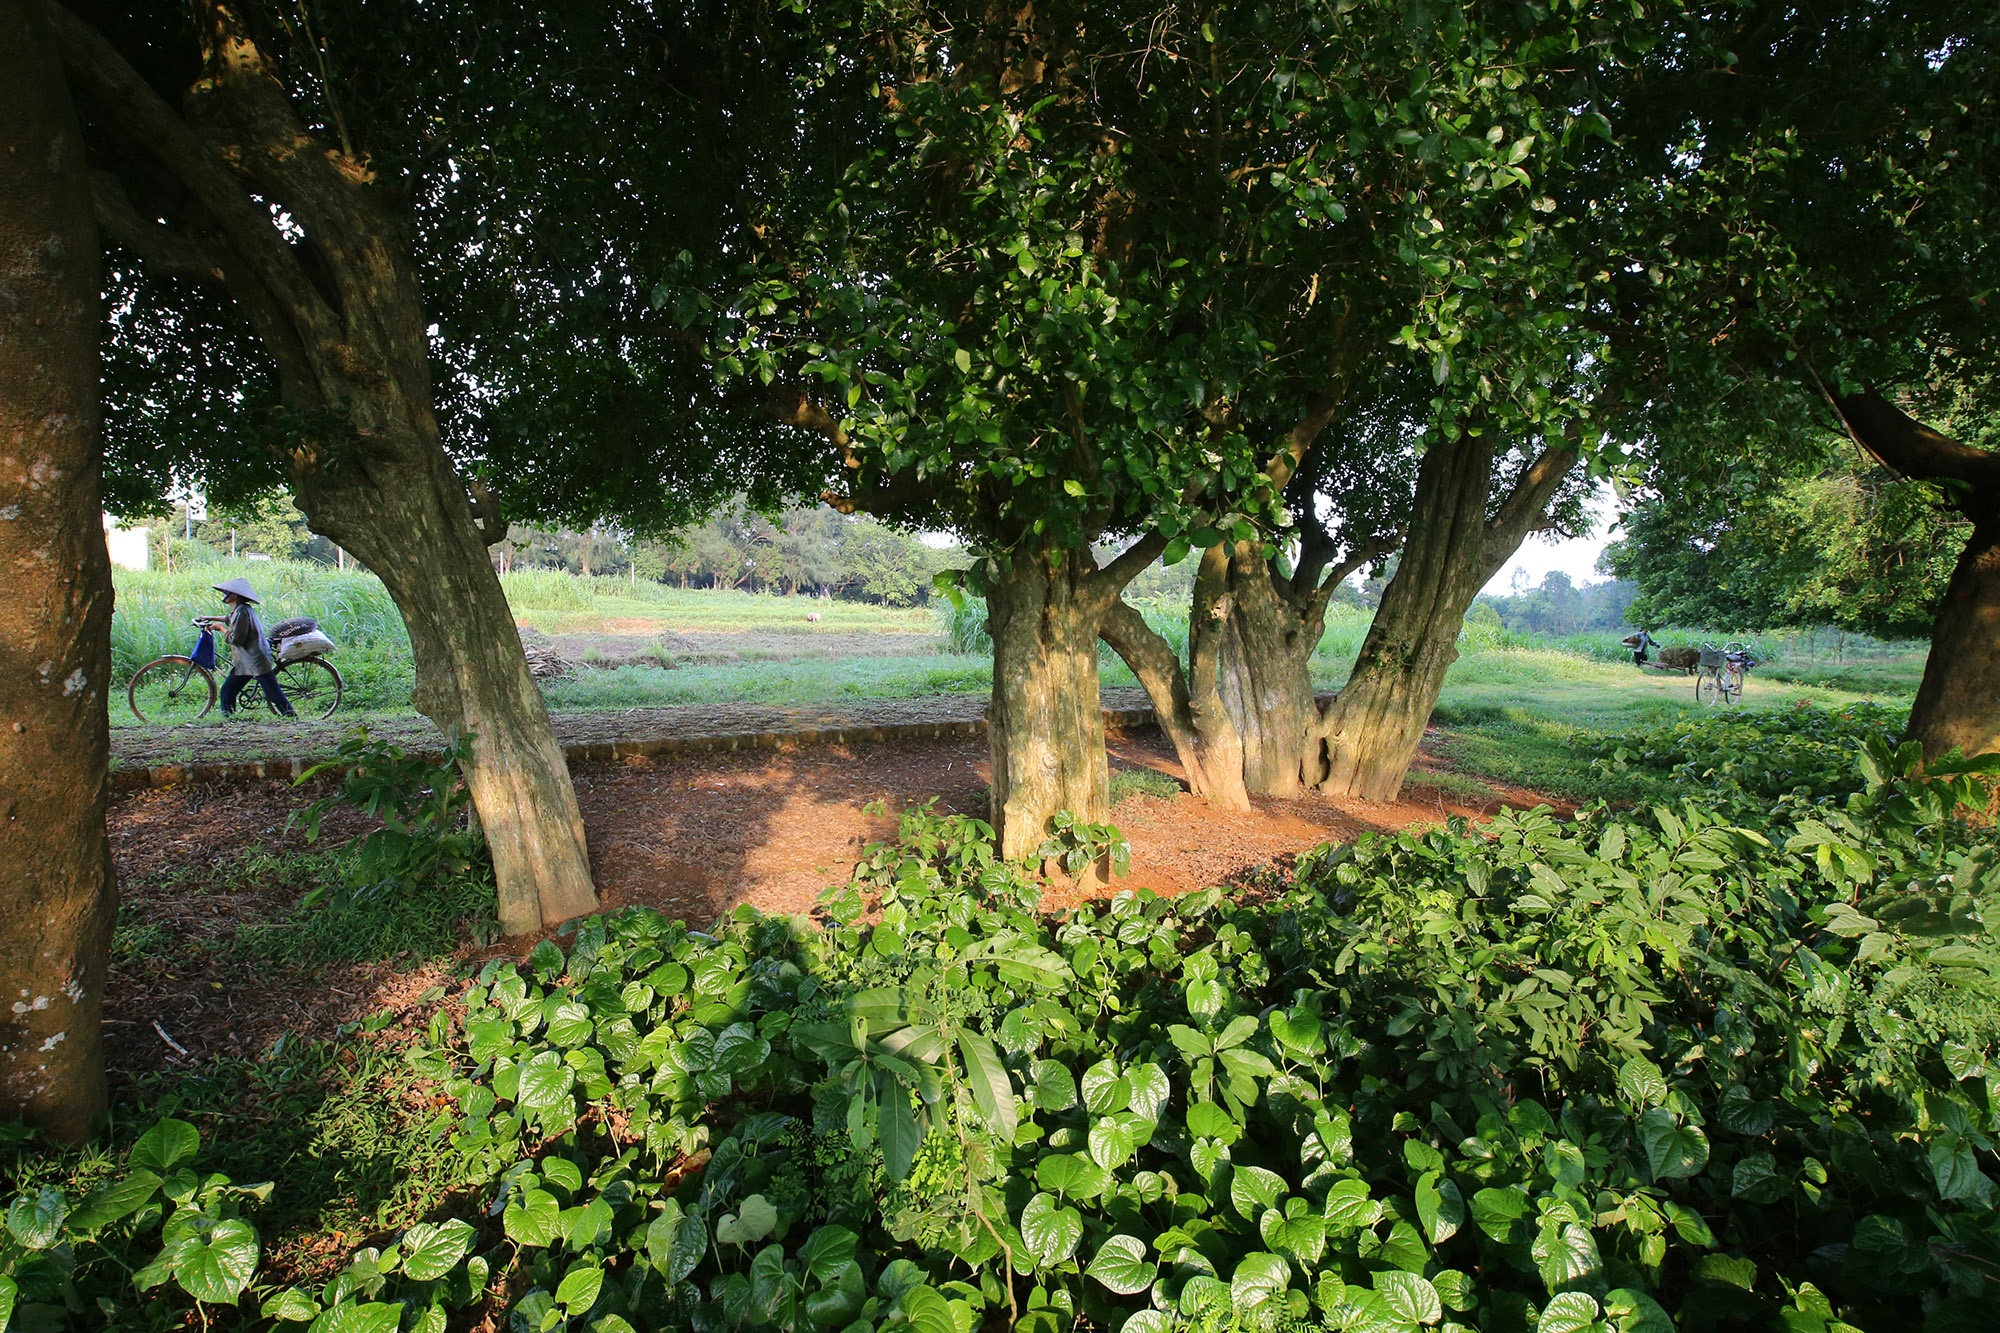 Rặng cây duối cổ hơn 1000 năm tuổi ở Hà Nội - 2